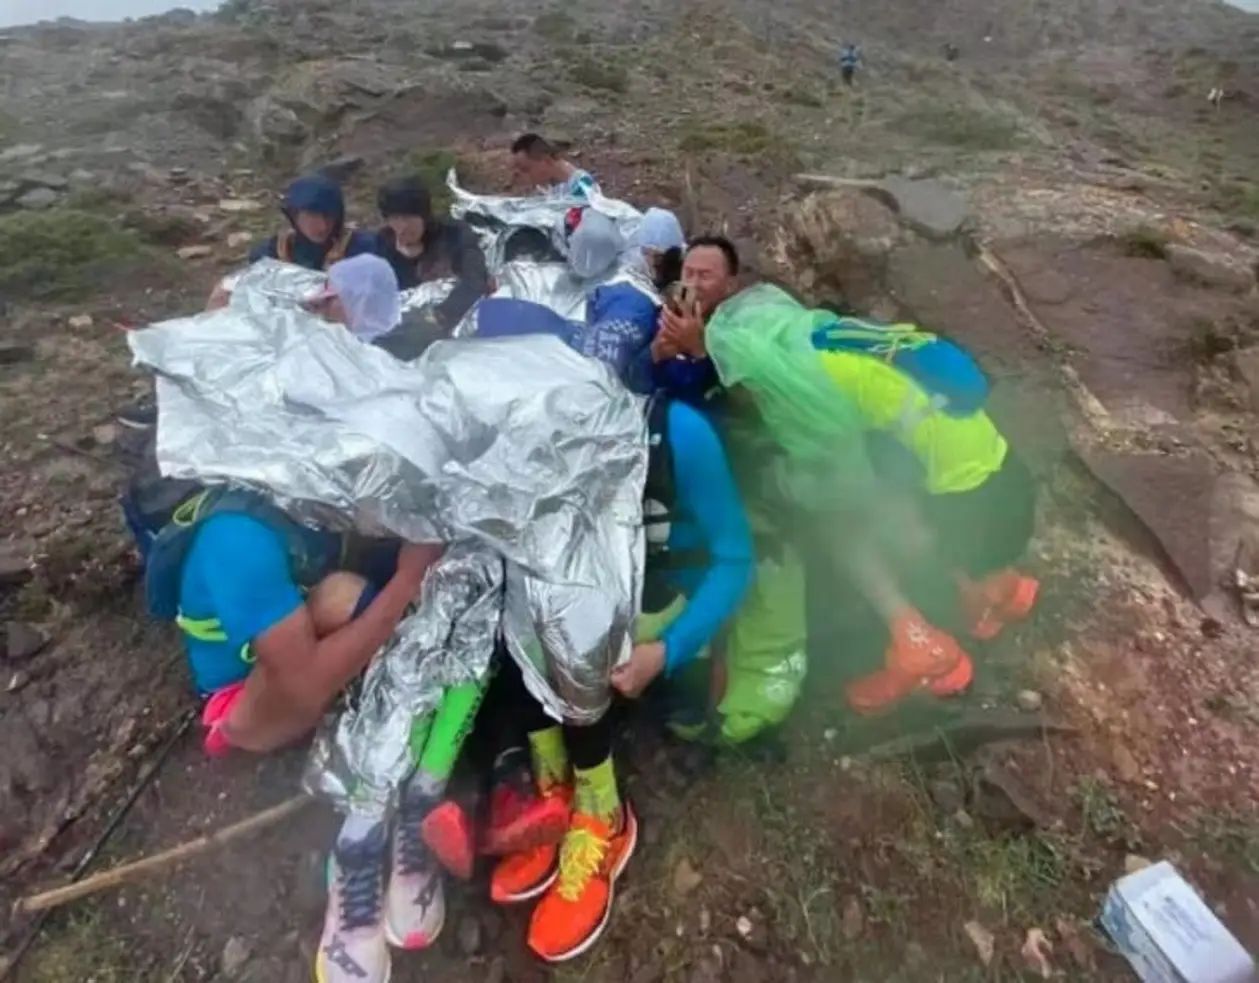 «Я достал одеяло – его тут же унесло ветром». Письмо бегуна, выжившего в марафоне, где замерз насмерть 21 участник